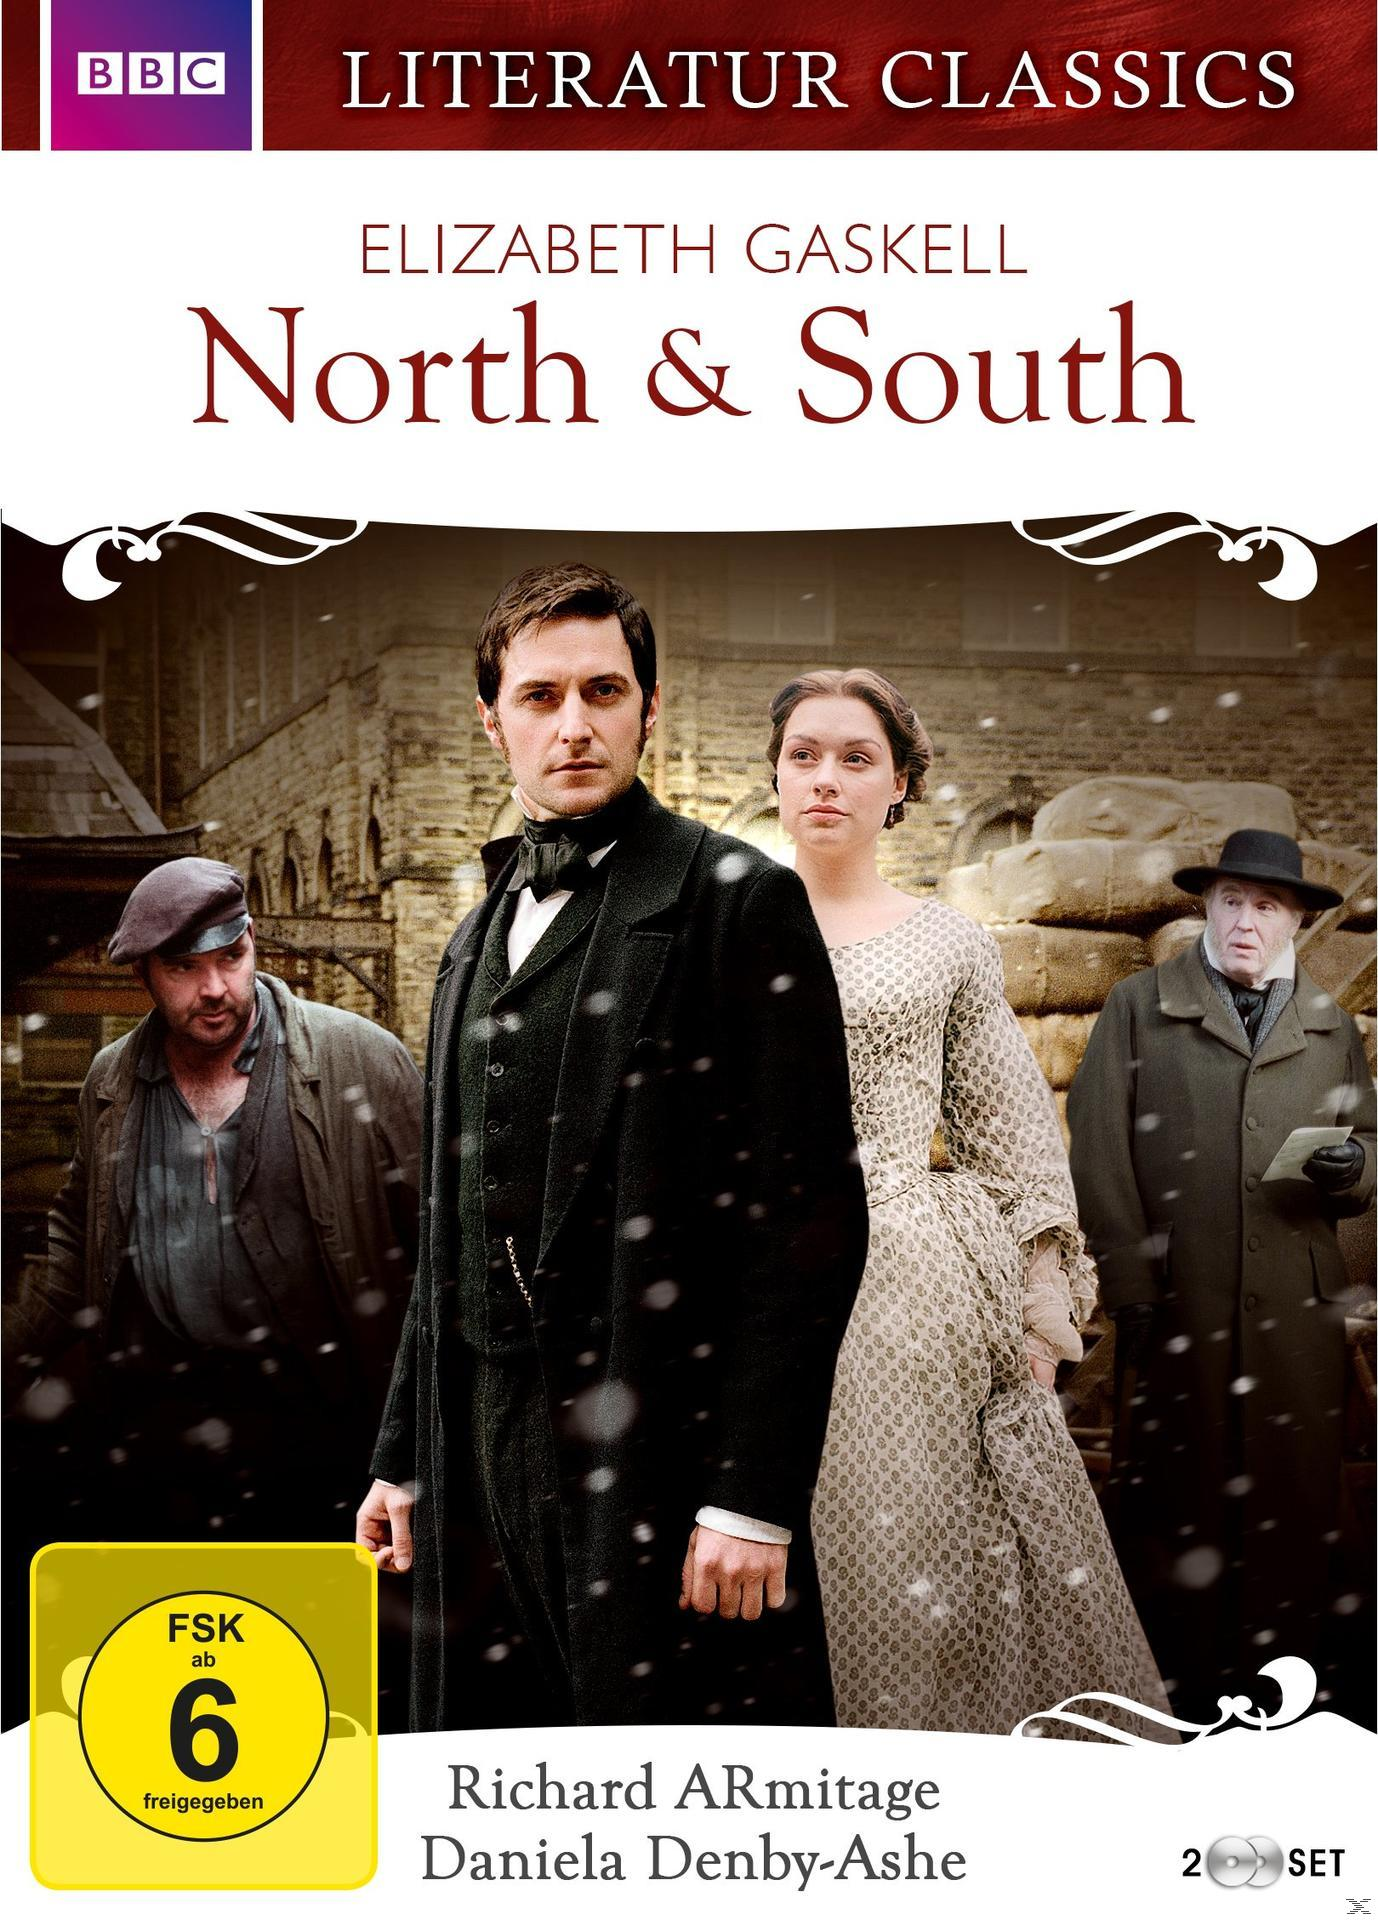 North & South (2004) - Gaskell DVD Elizabeth